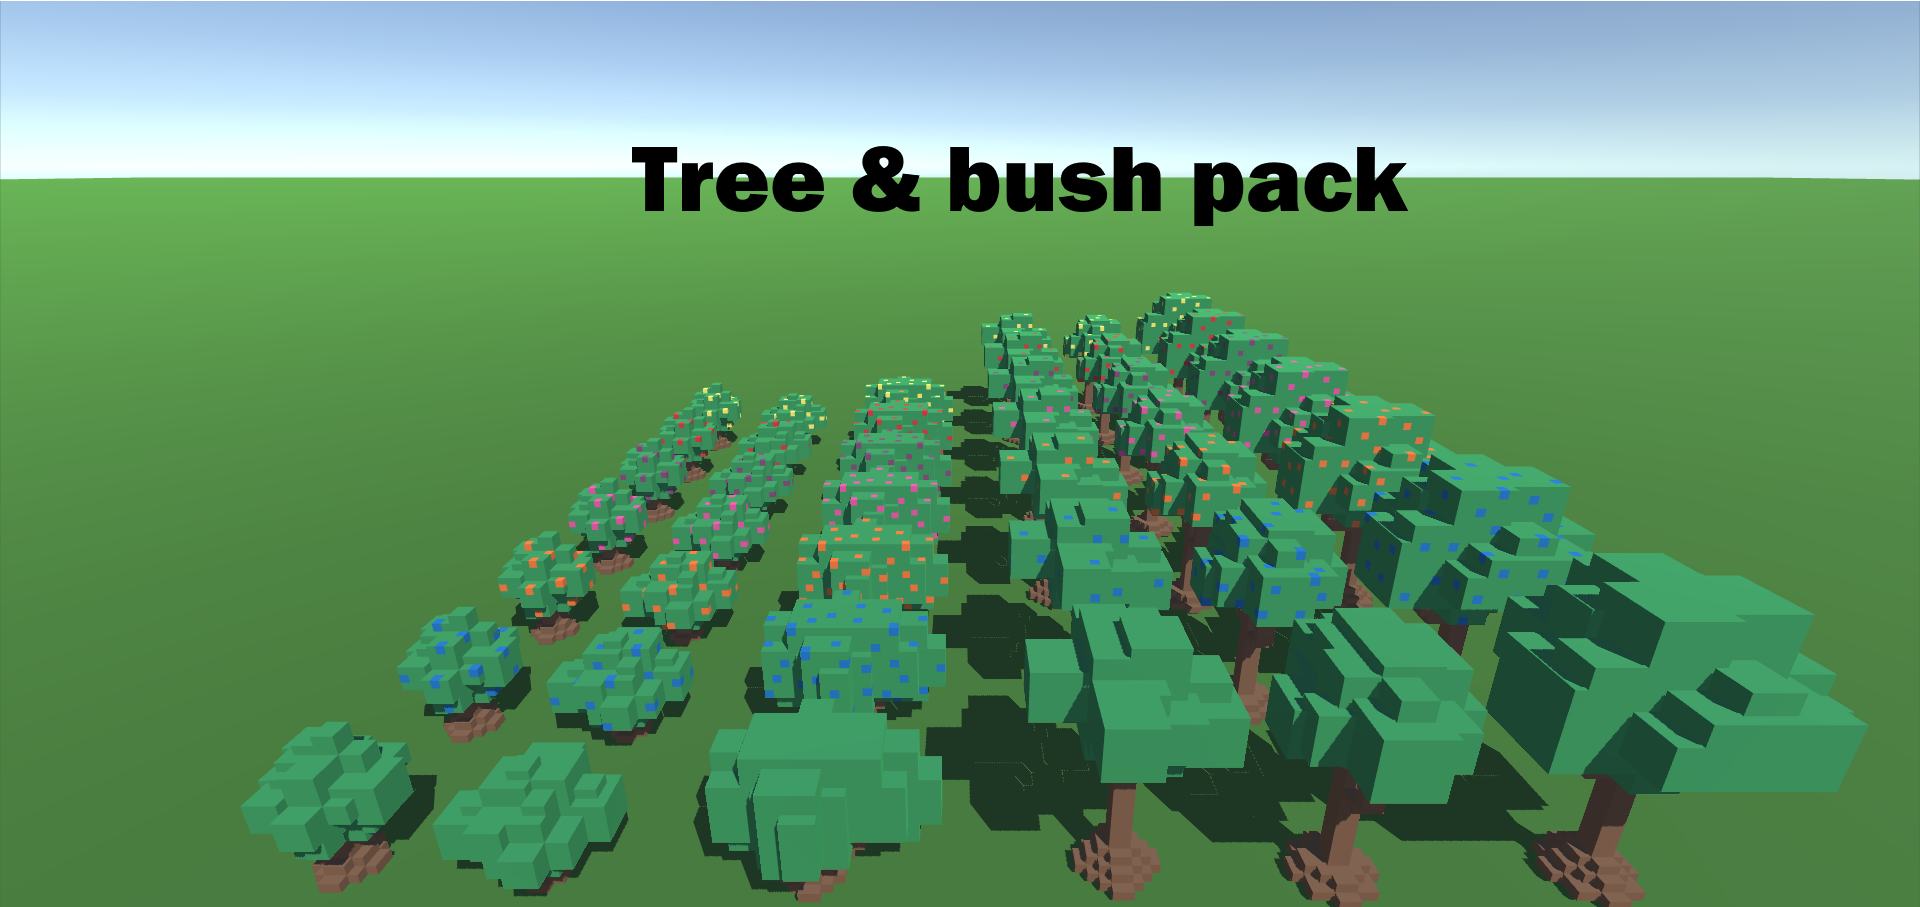 Tree & bush pack